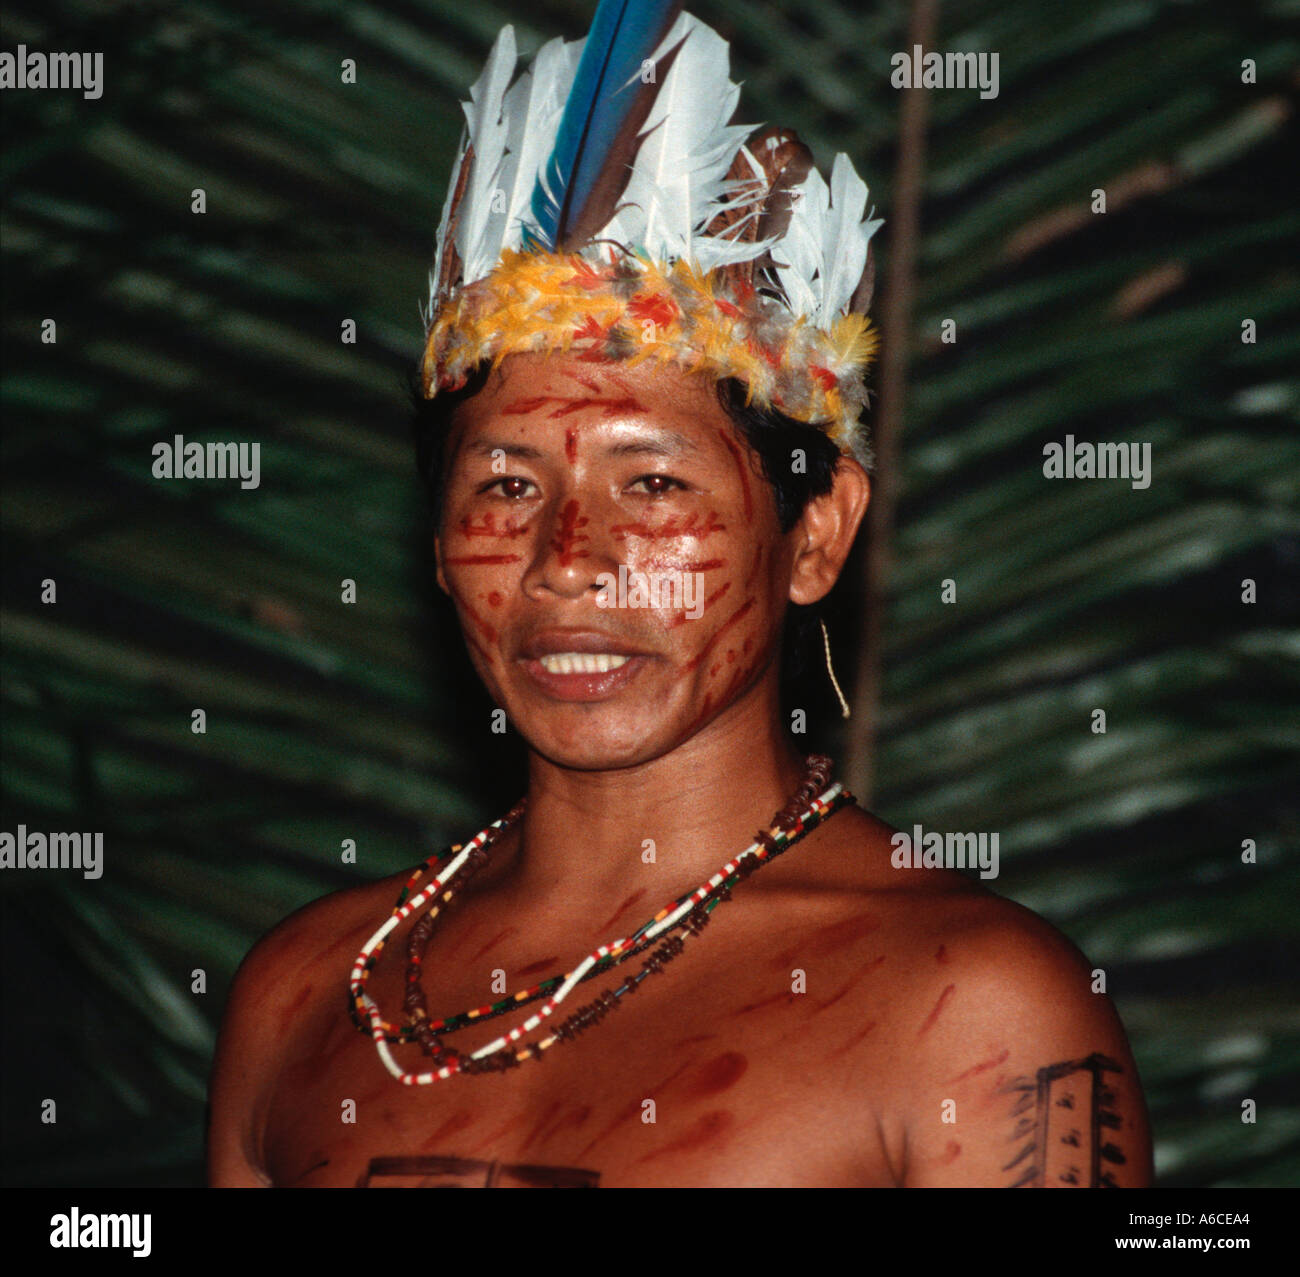 Tariano ceremony Indian tribe from Alto Rio Negro Amazon 